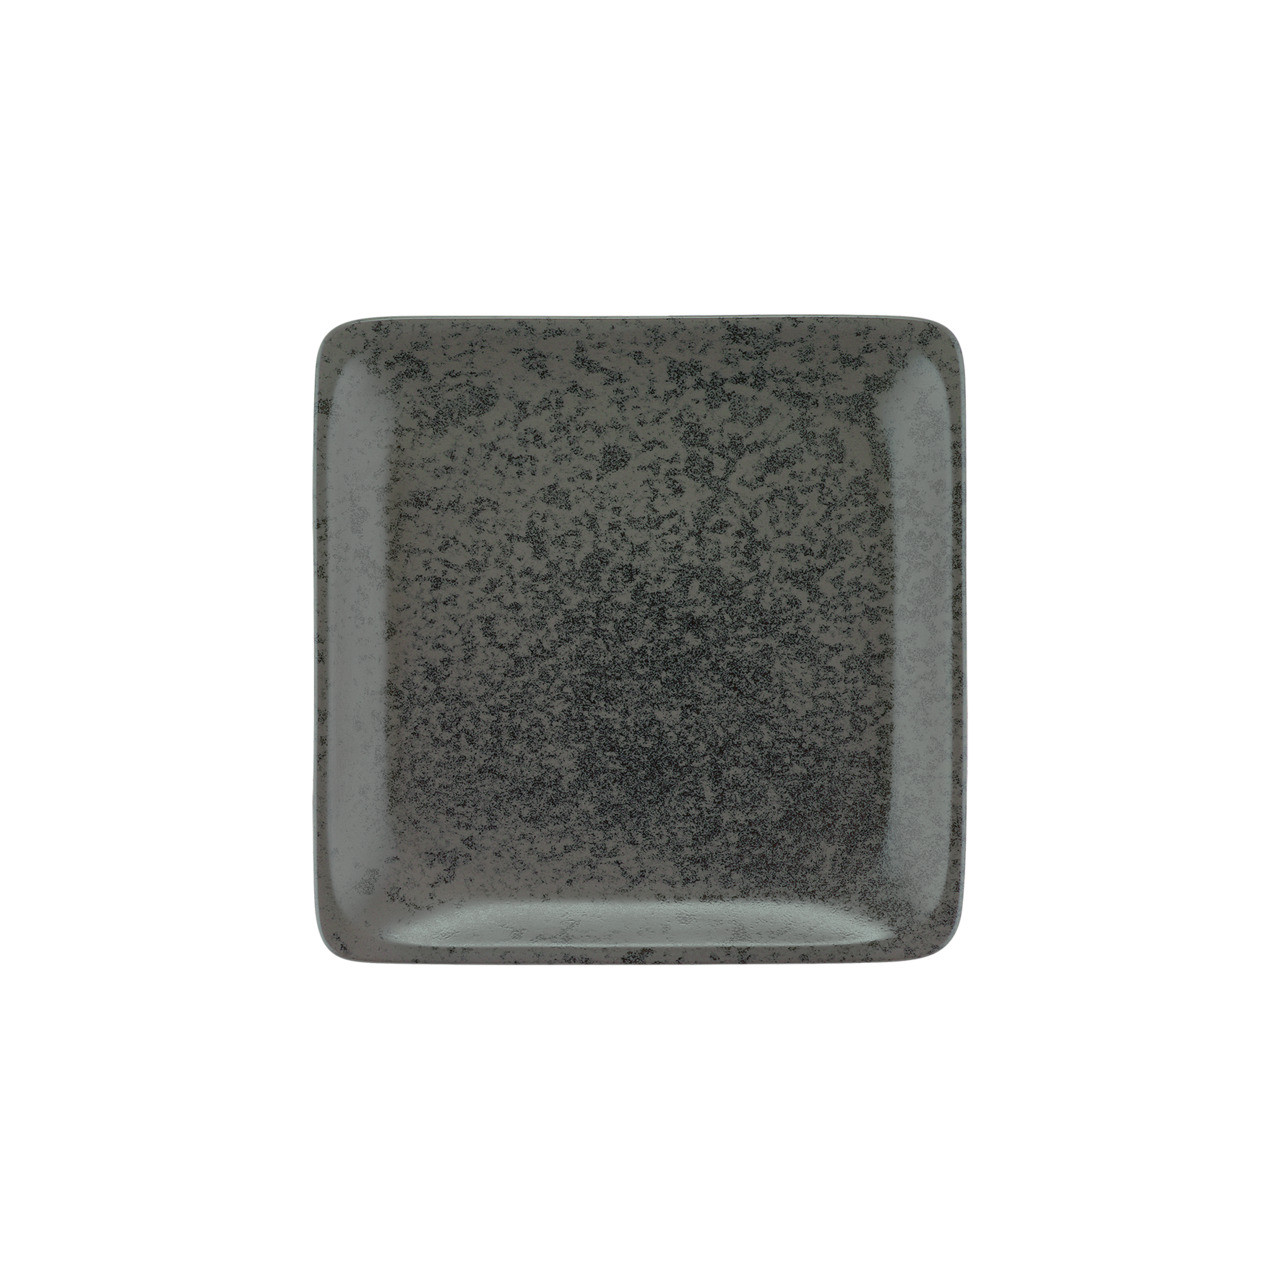 Sandstone, Teller flach quadratisch 215 x 215 mm black